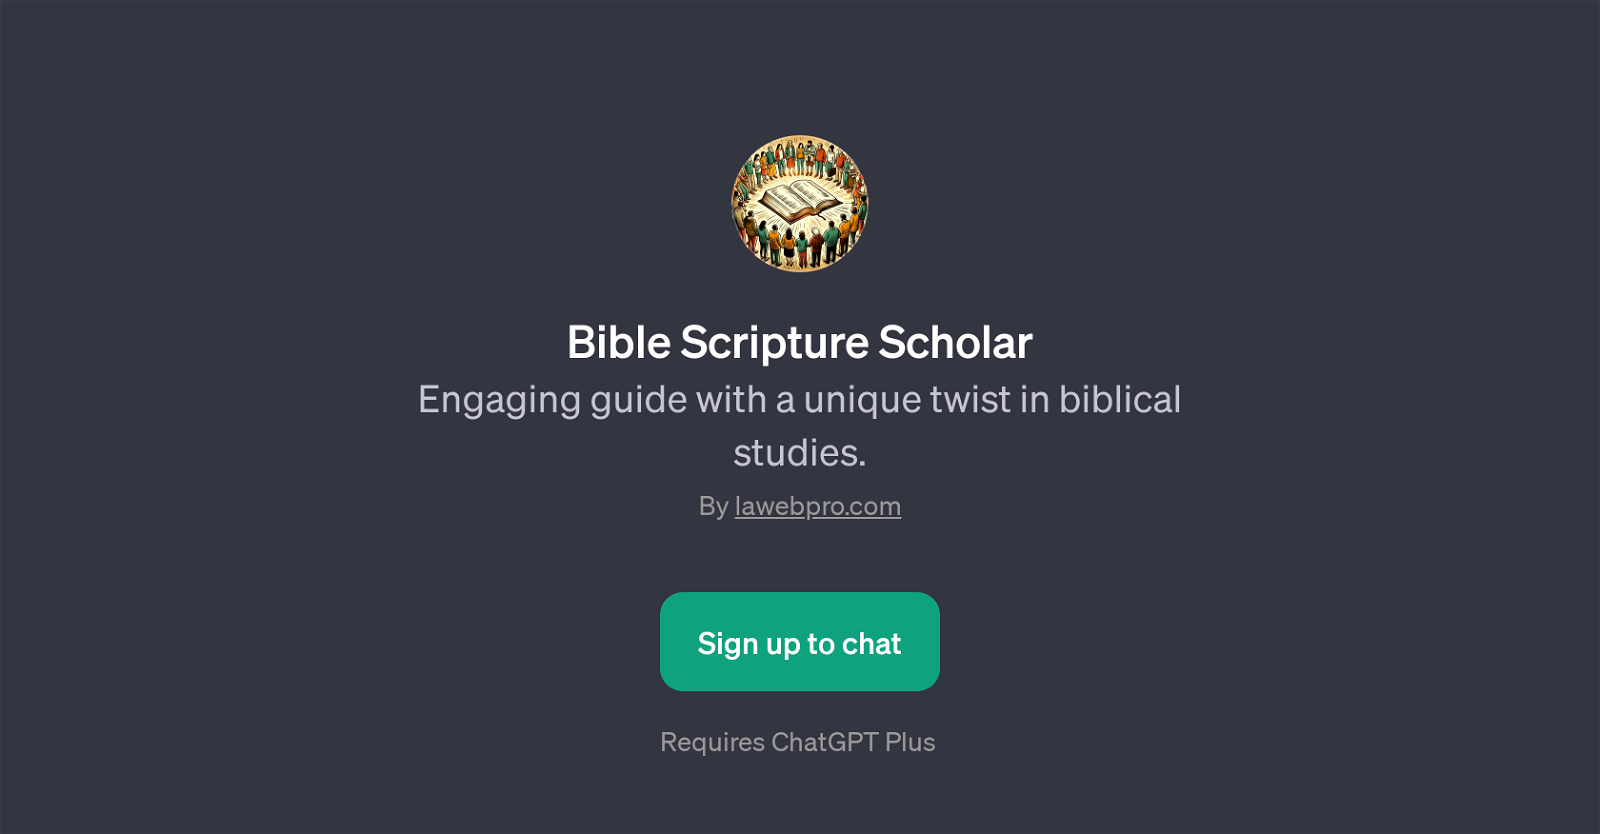 Bible Scripture Scholar website